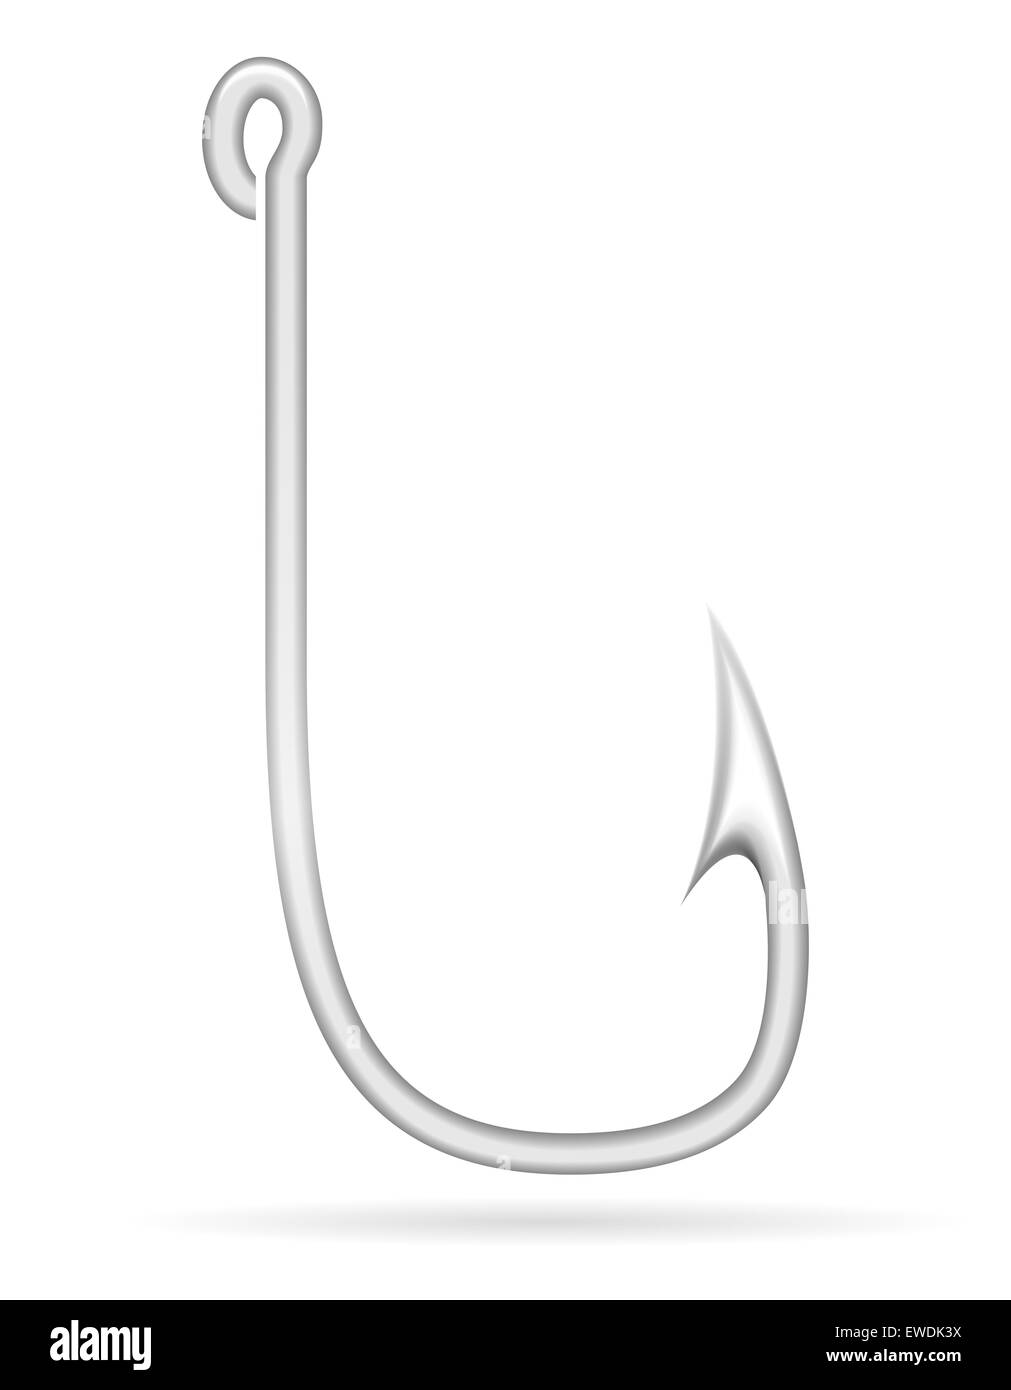 fishhook for fishing illustration isolated on white background Stock Photo